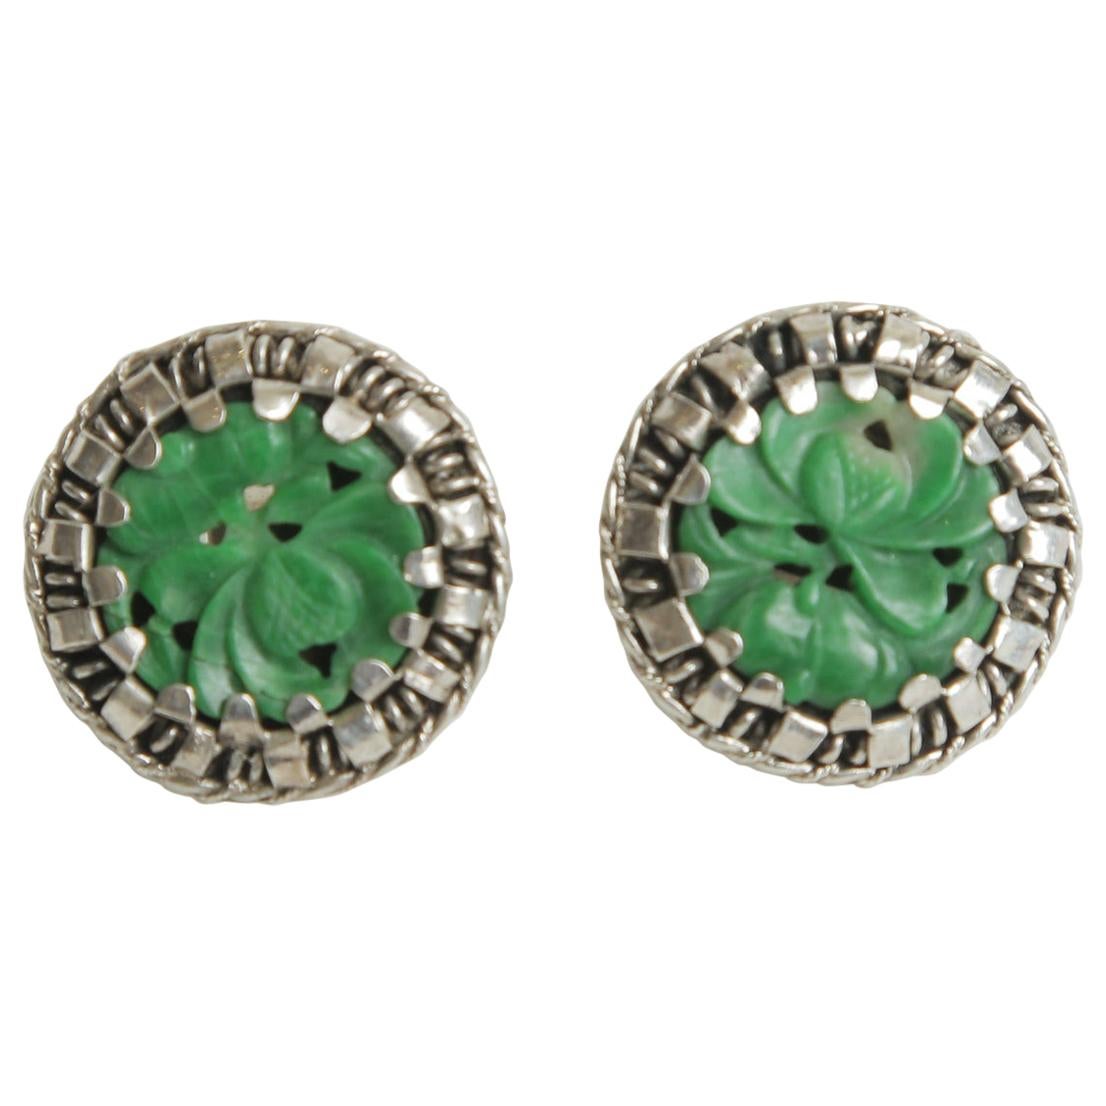 Ohrringe aus Sterlingsilber und grüner Jade mit durchbrochenem Knopfleiste